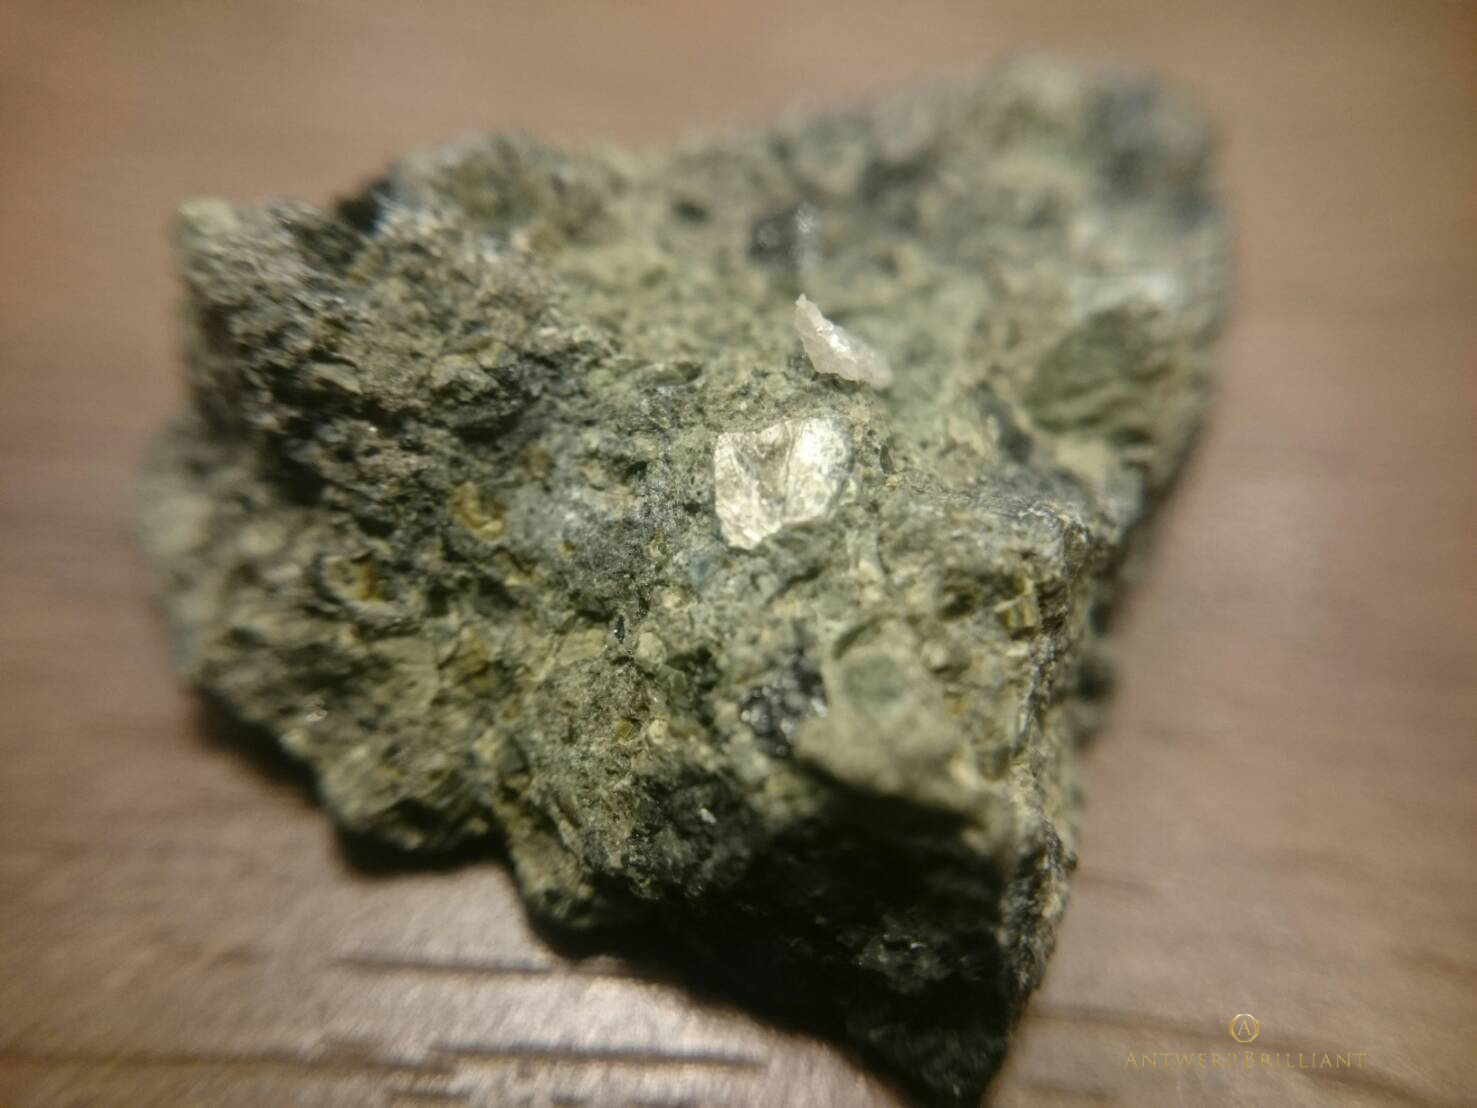 キンバーライト鉱石はダイヤモンドを含んだマグマ由来の火成岩BRIDGE銀座東京